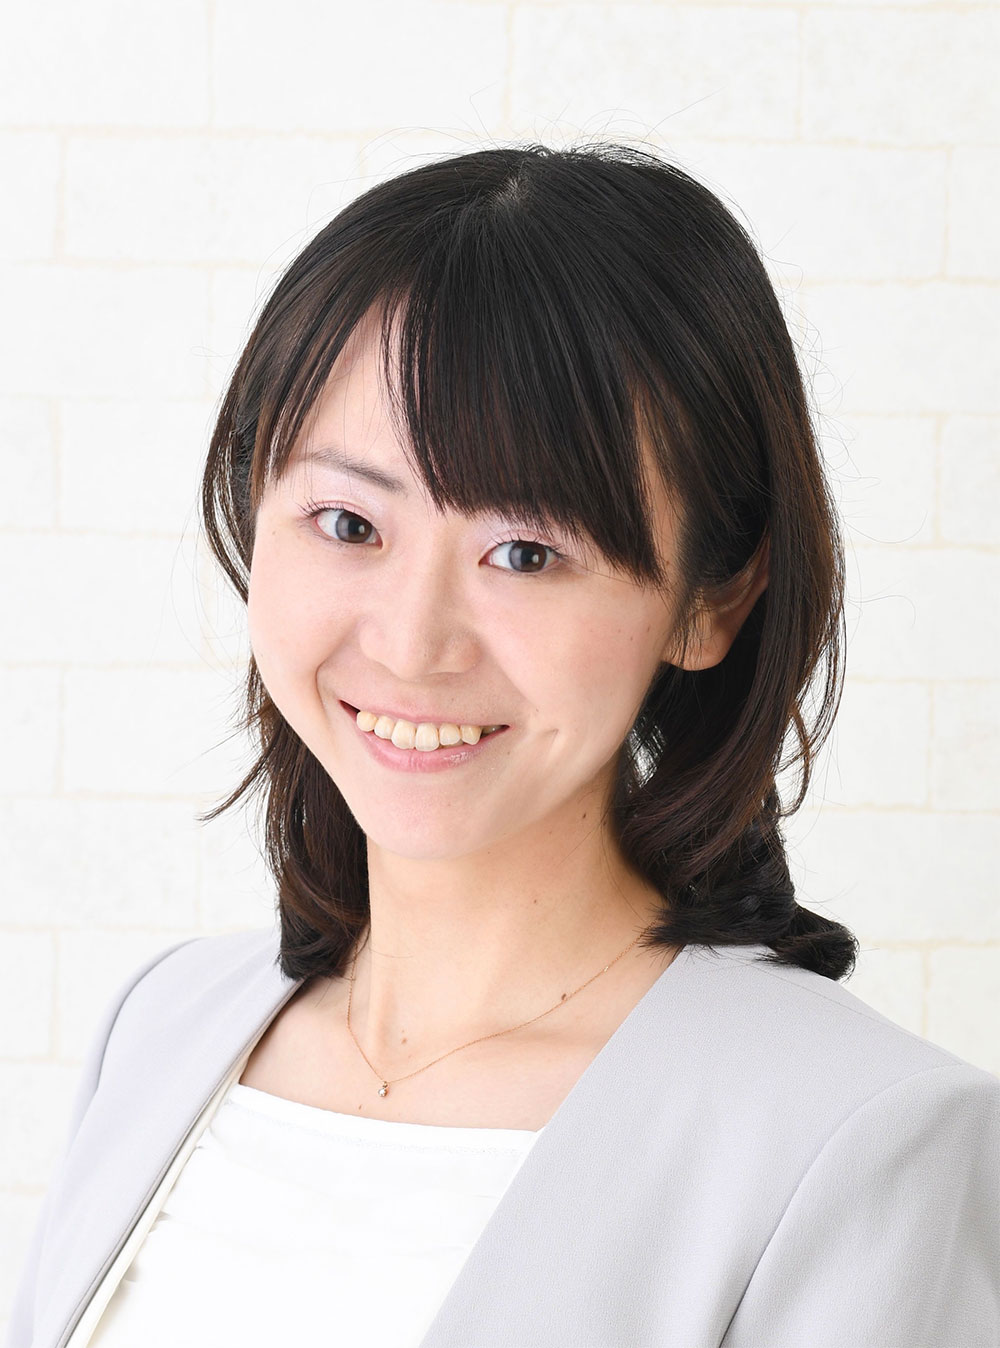 日本人奨学生の顔写真